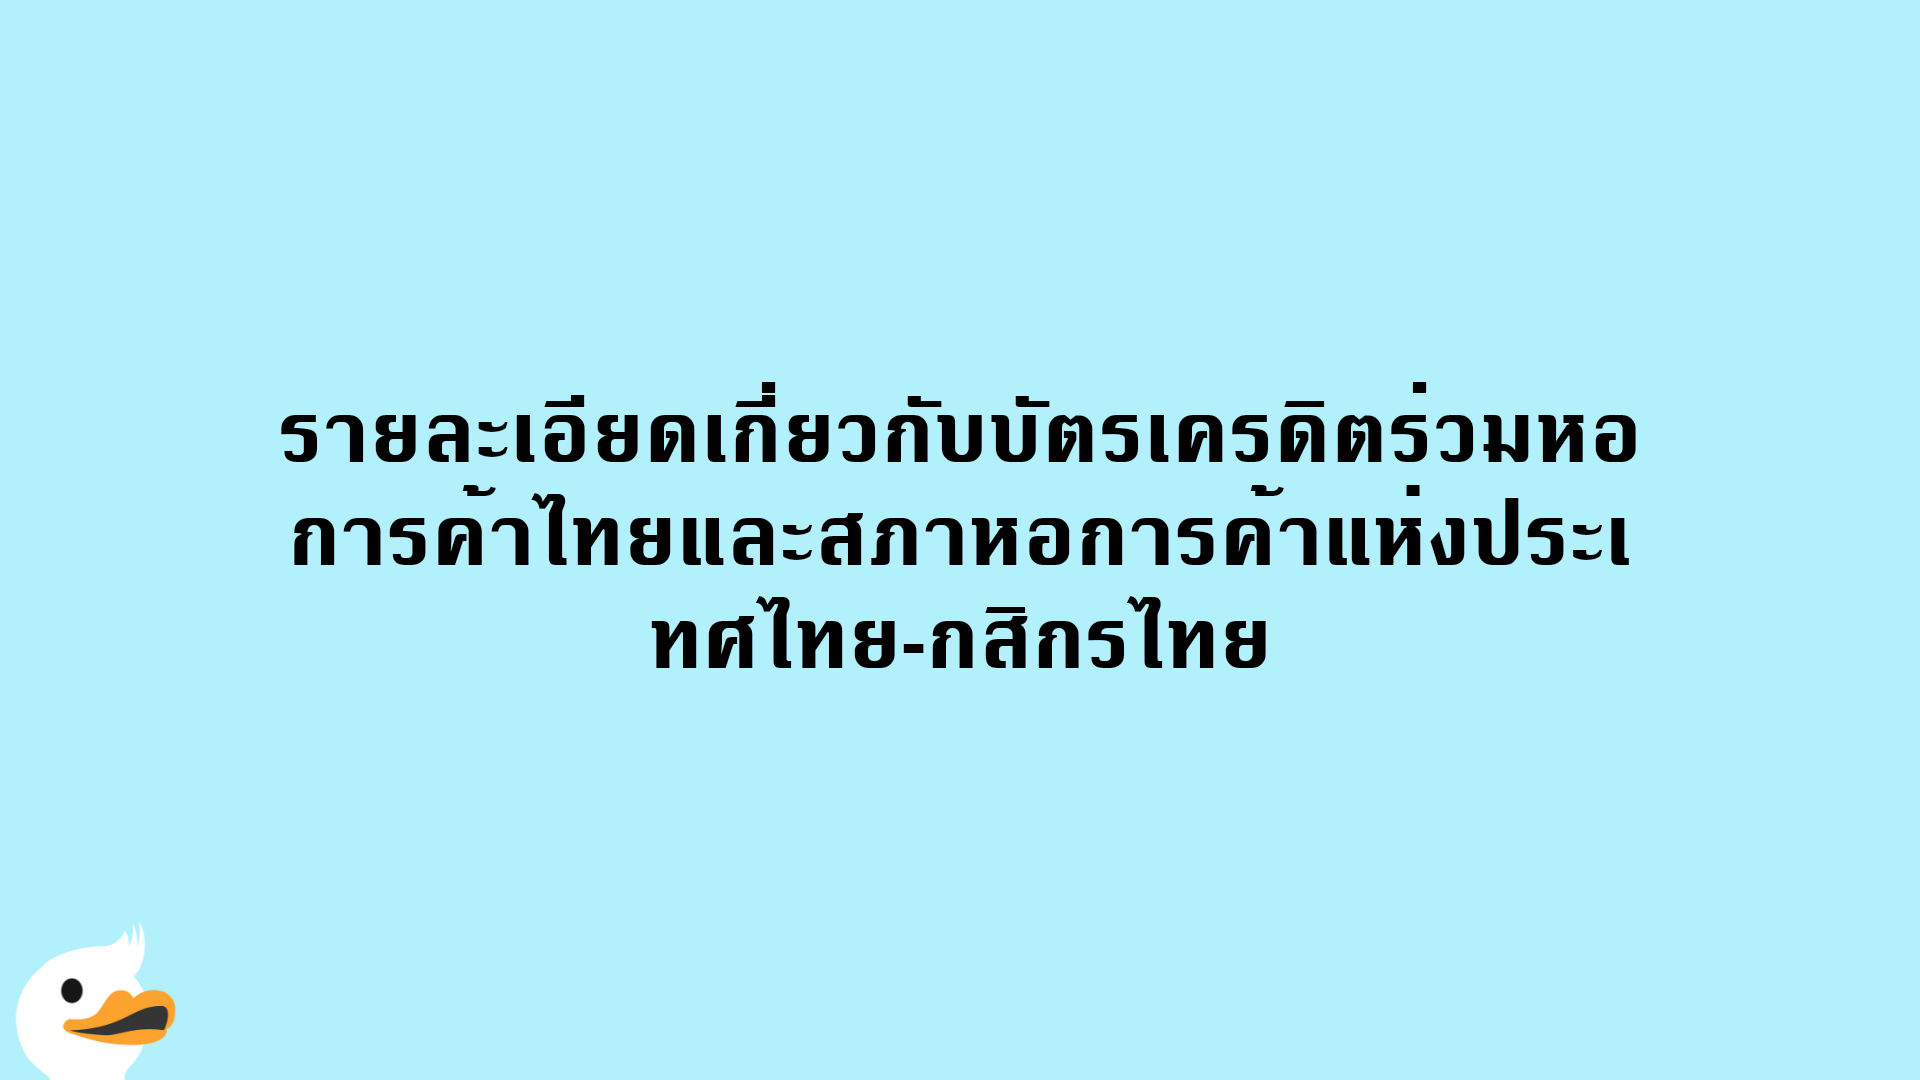 รายละเอียดเกี่ยวกับบัตรเครดิตร่วมหอการค้าไทยและสภาหอการค้าแห่งประเทศไทย-กสิกรไทย